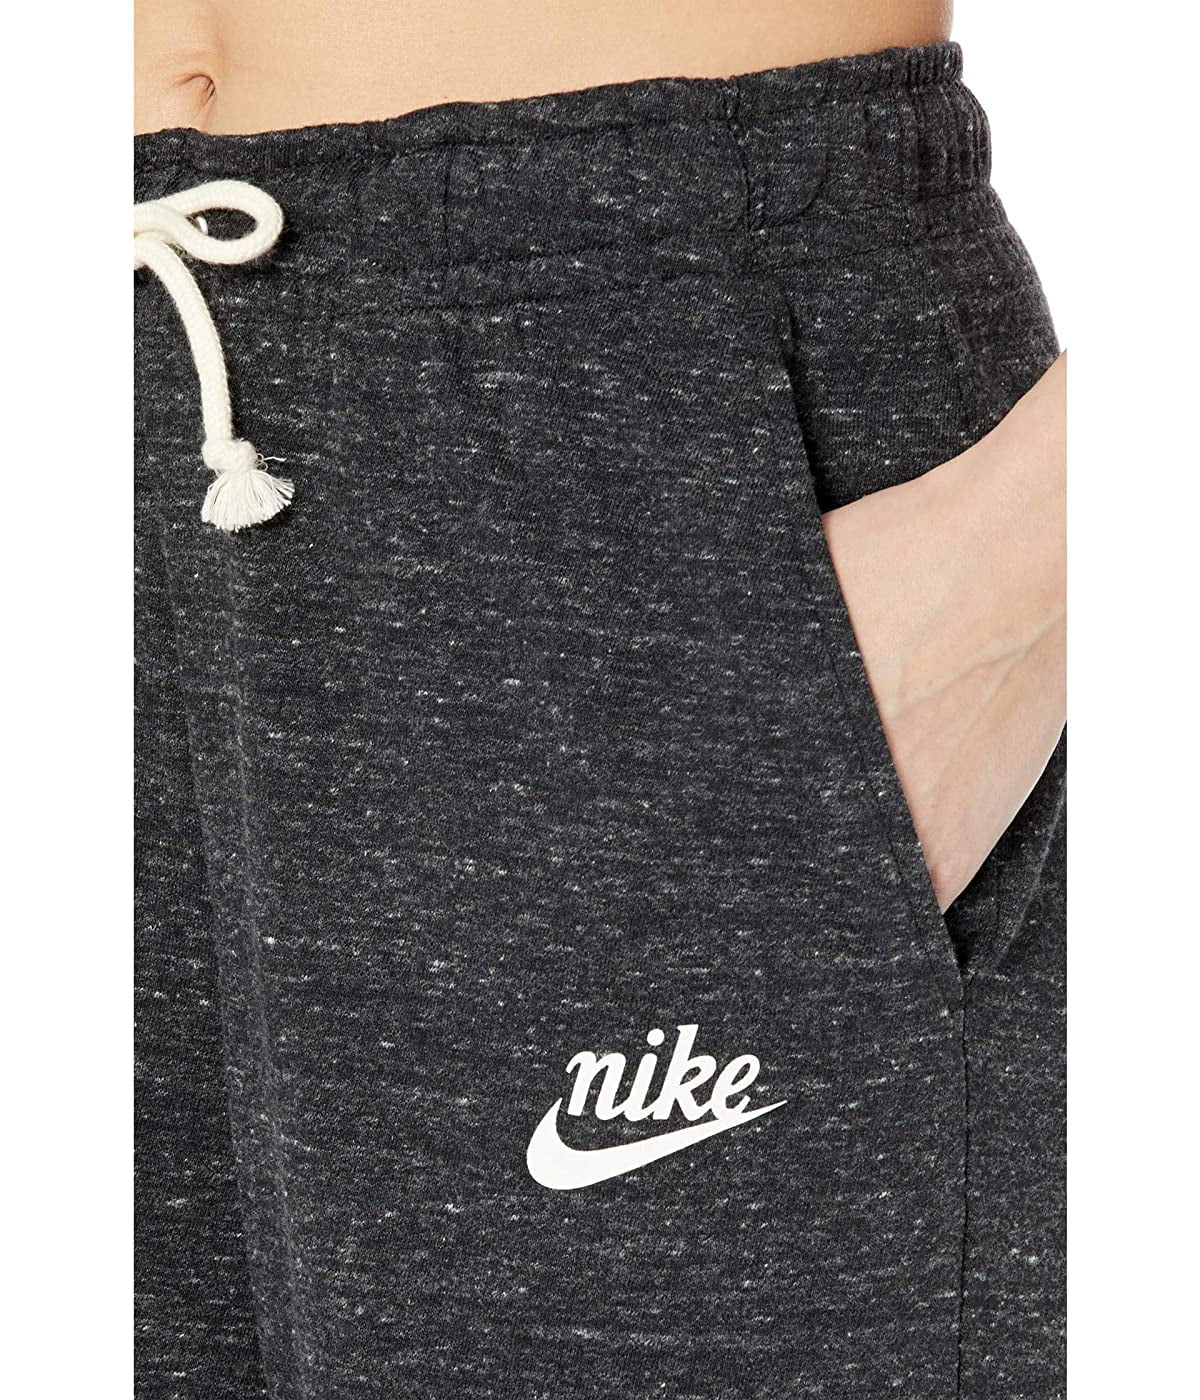 NEW Nike Women's Sportswear Gym Vintage Distressed Pants Size M L